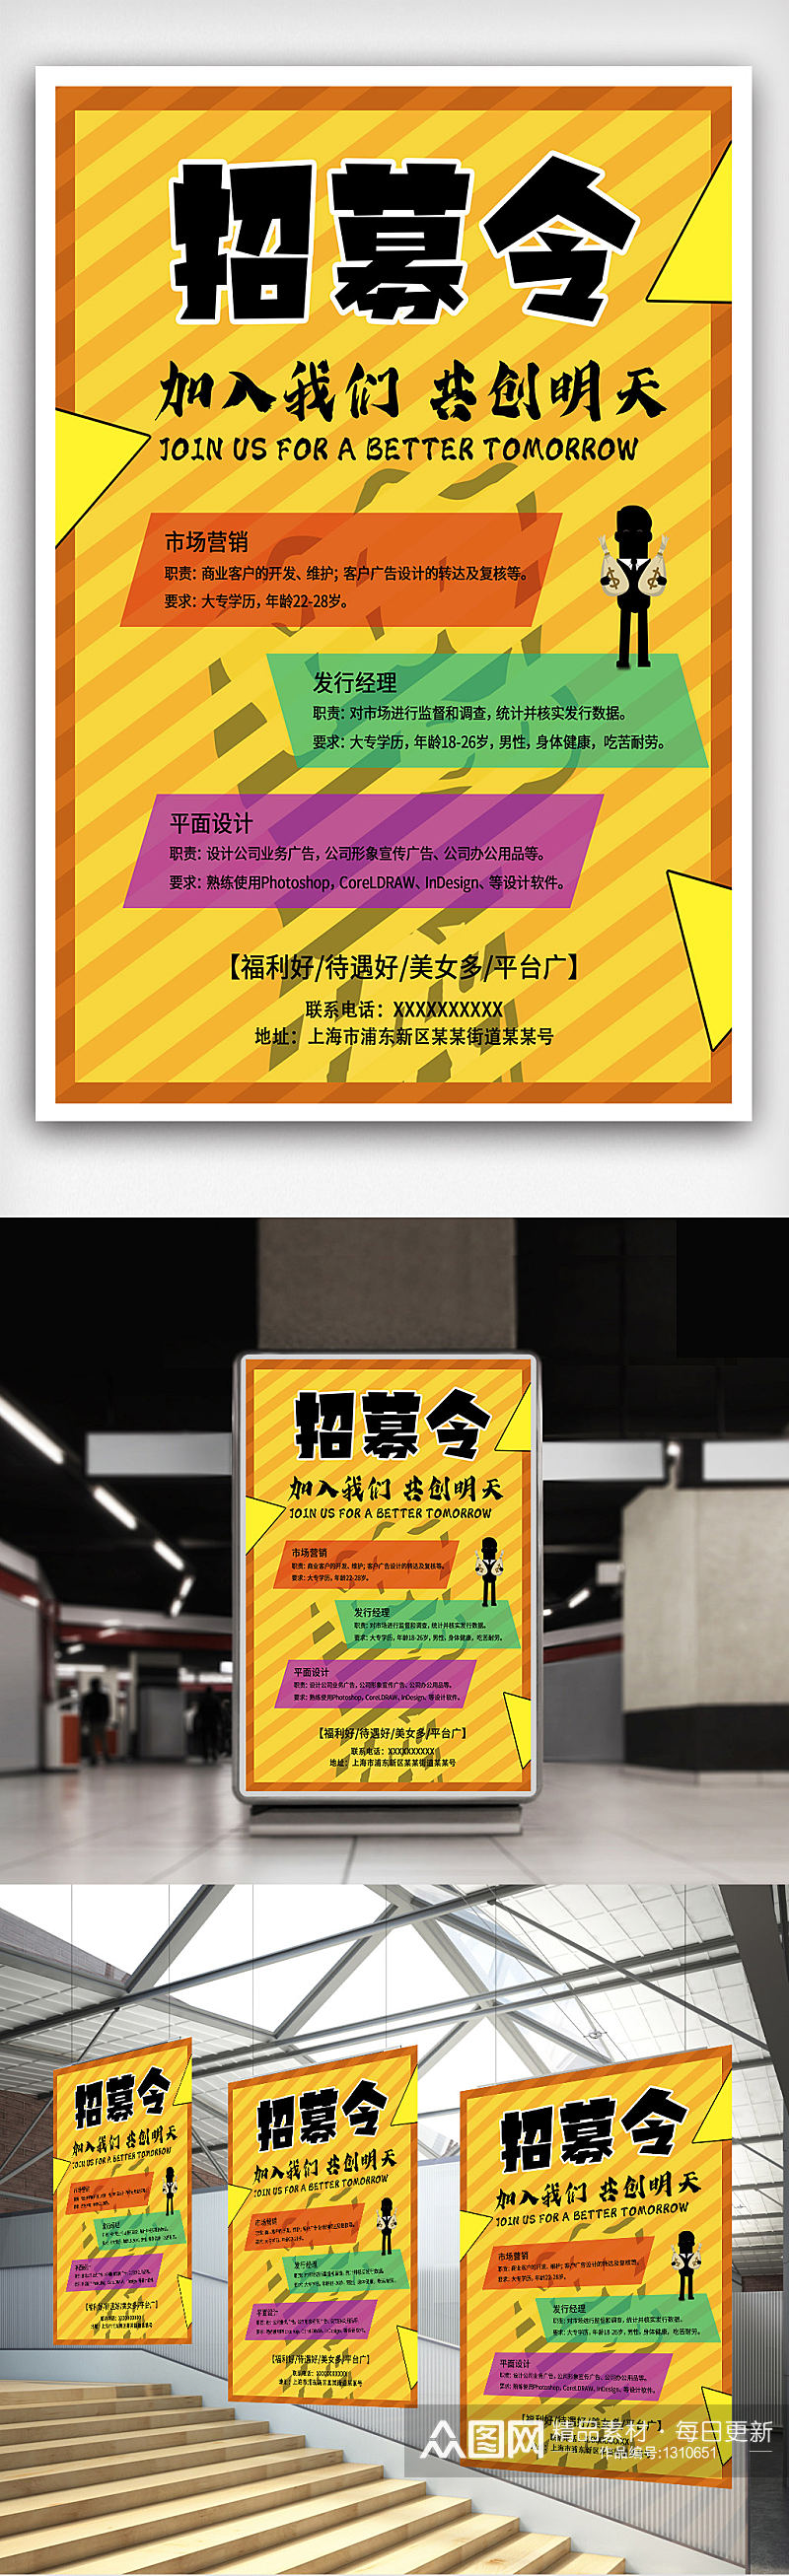 企业招聘海报招贤纳士加入我们黄色商务风格素材